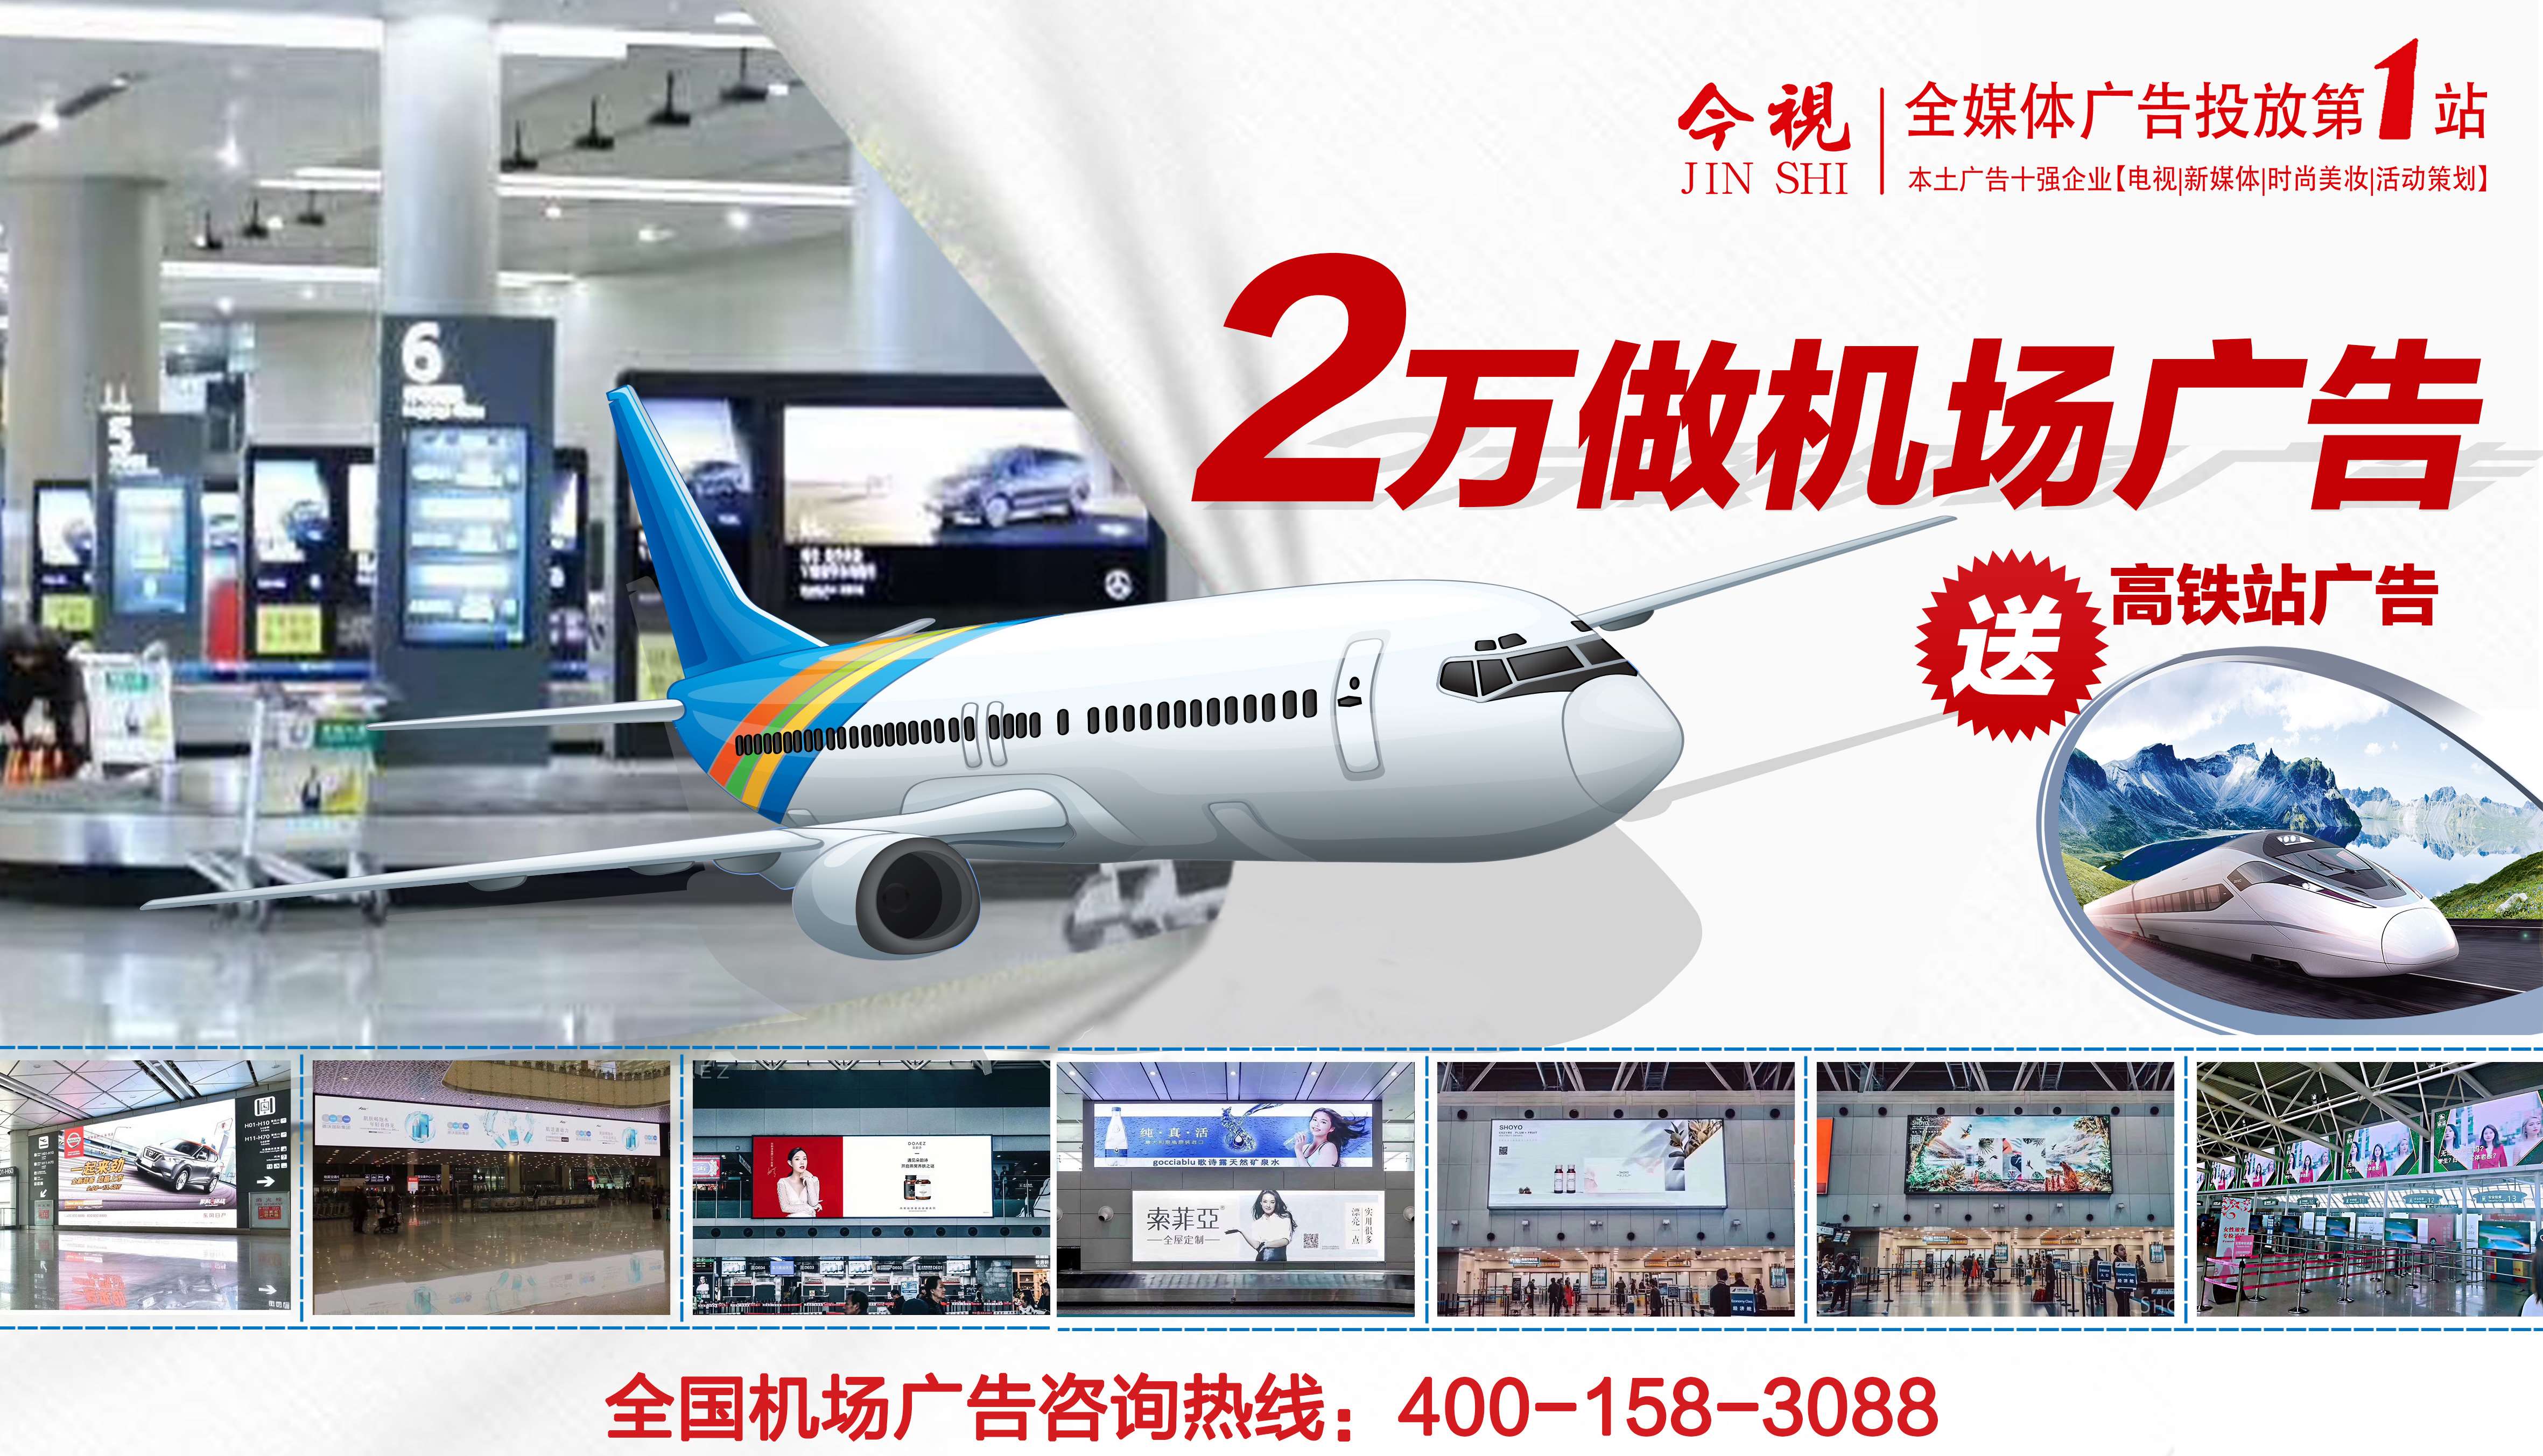 投放重庆机场媒体广告、机票广告、登机牌广告、飞机广告就选广东今视传媒，广东今视广告投放热线：400-158-3088.